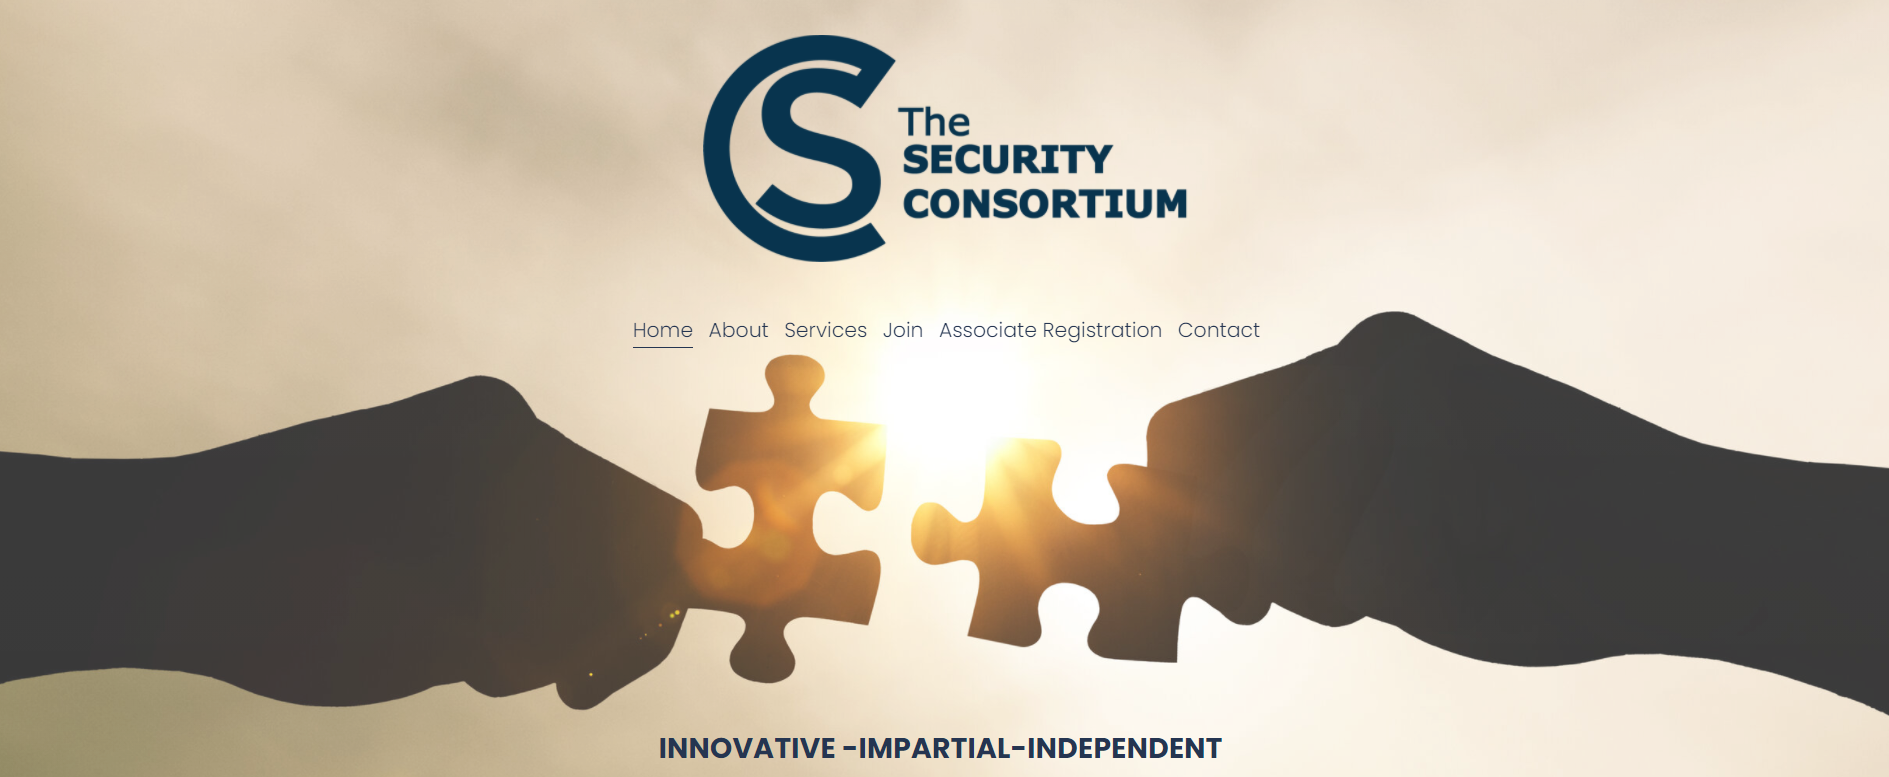 The Security Consortium Website